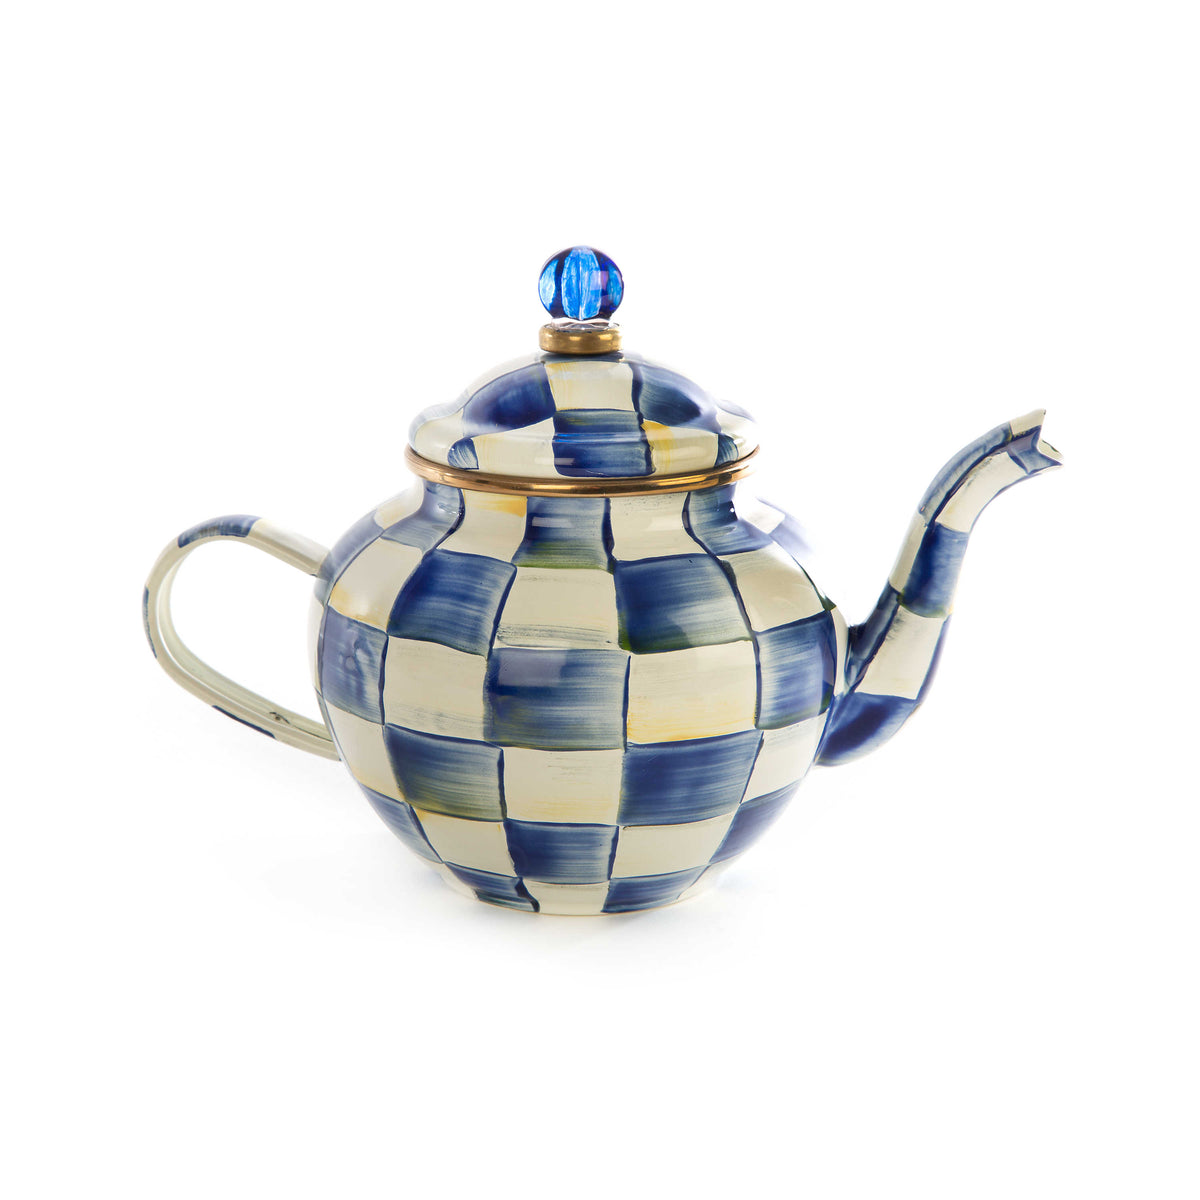 Royal Check Enamel Teapot - 4 Cup